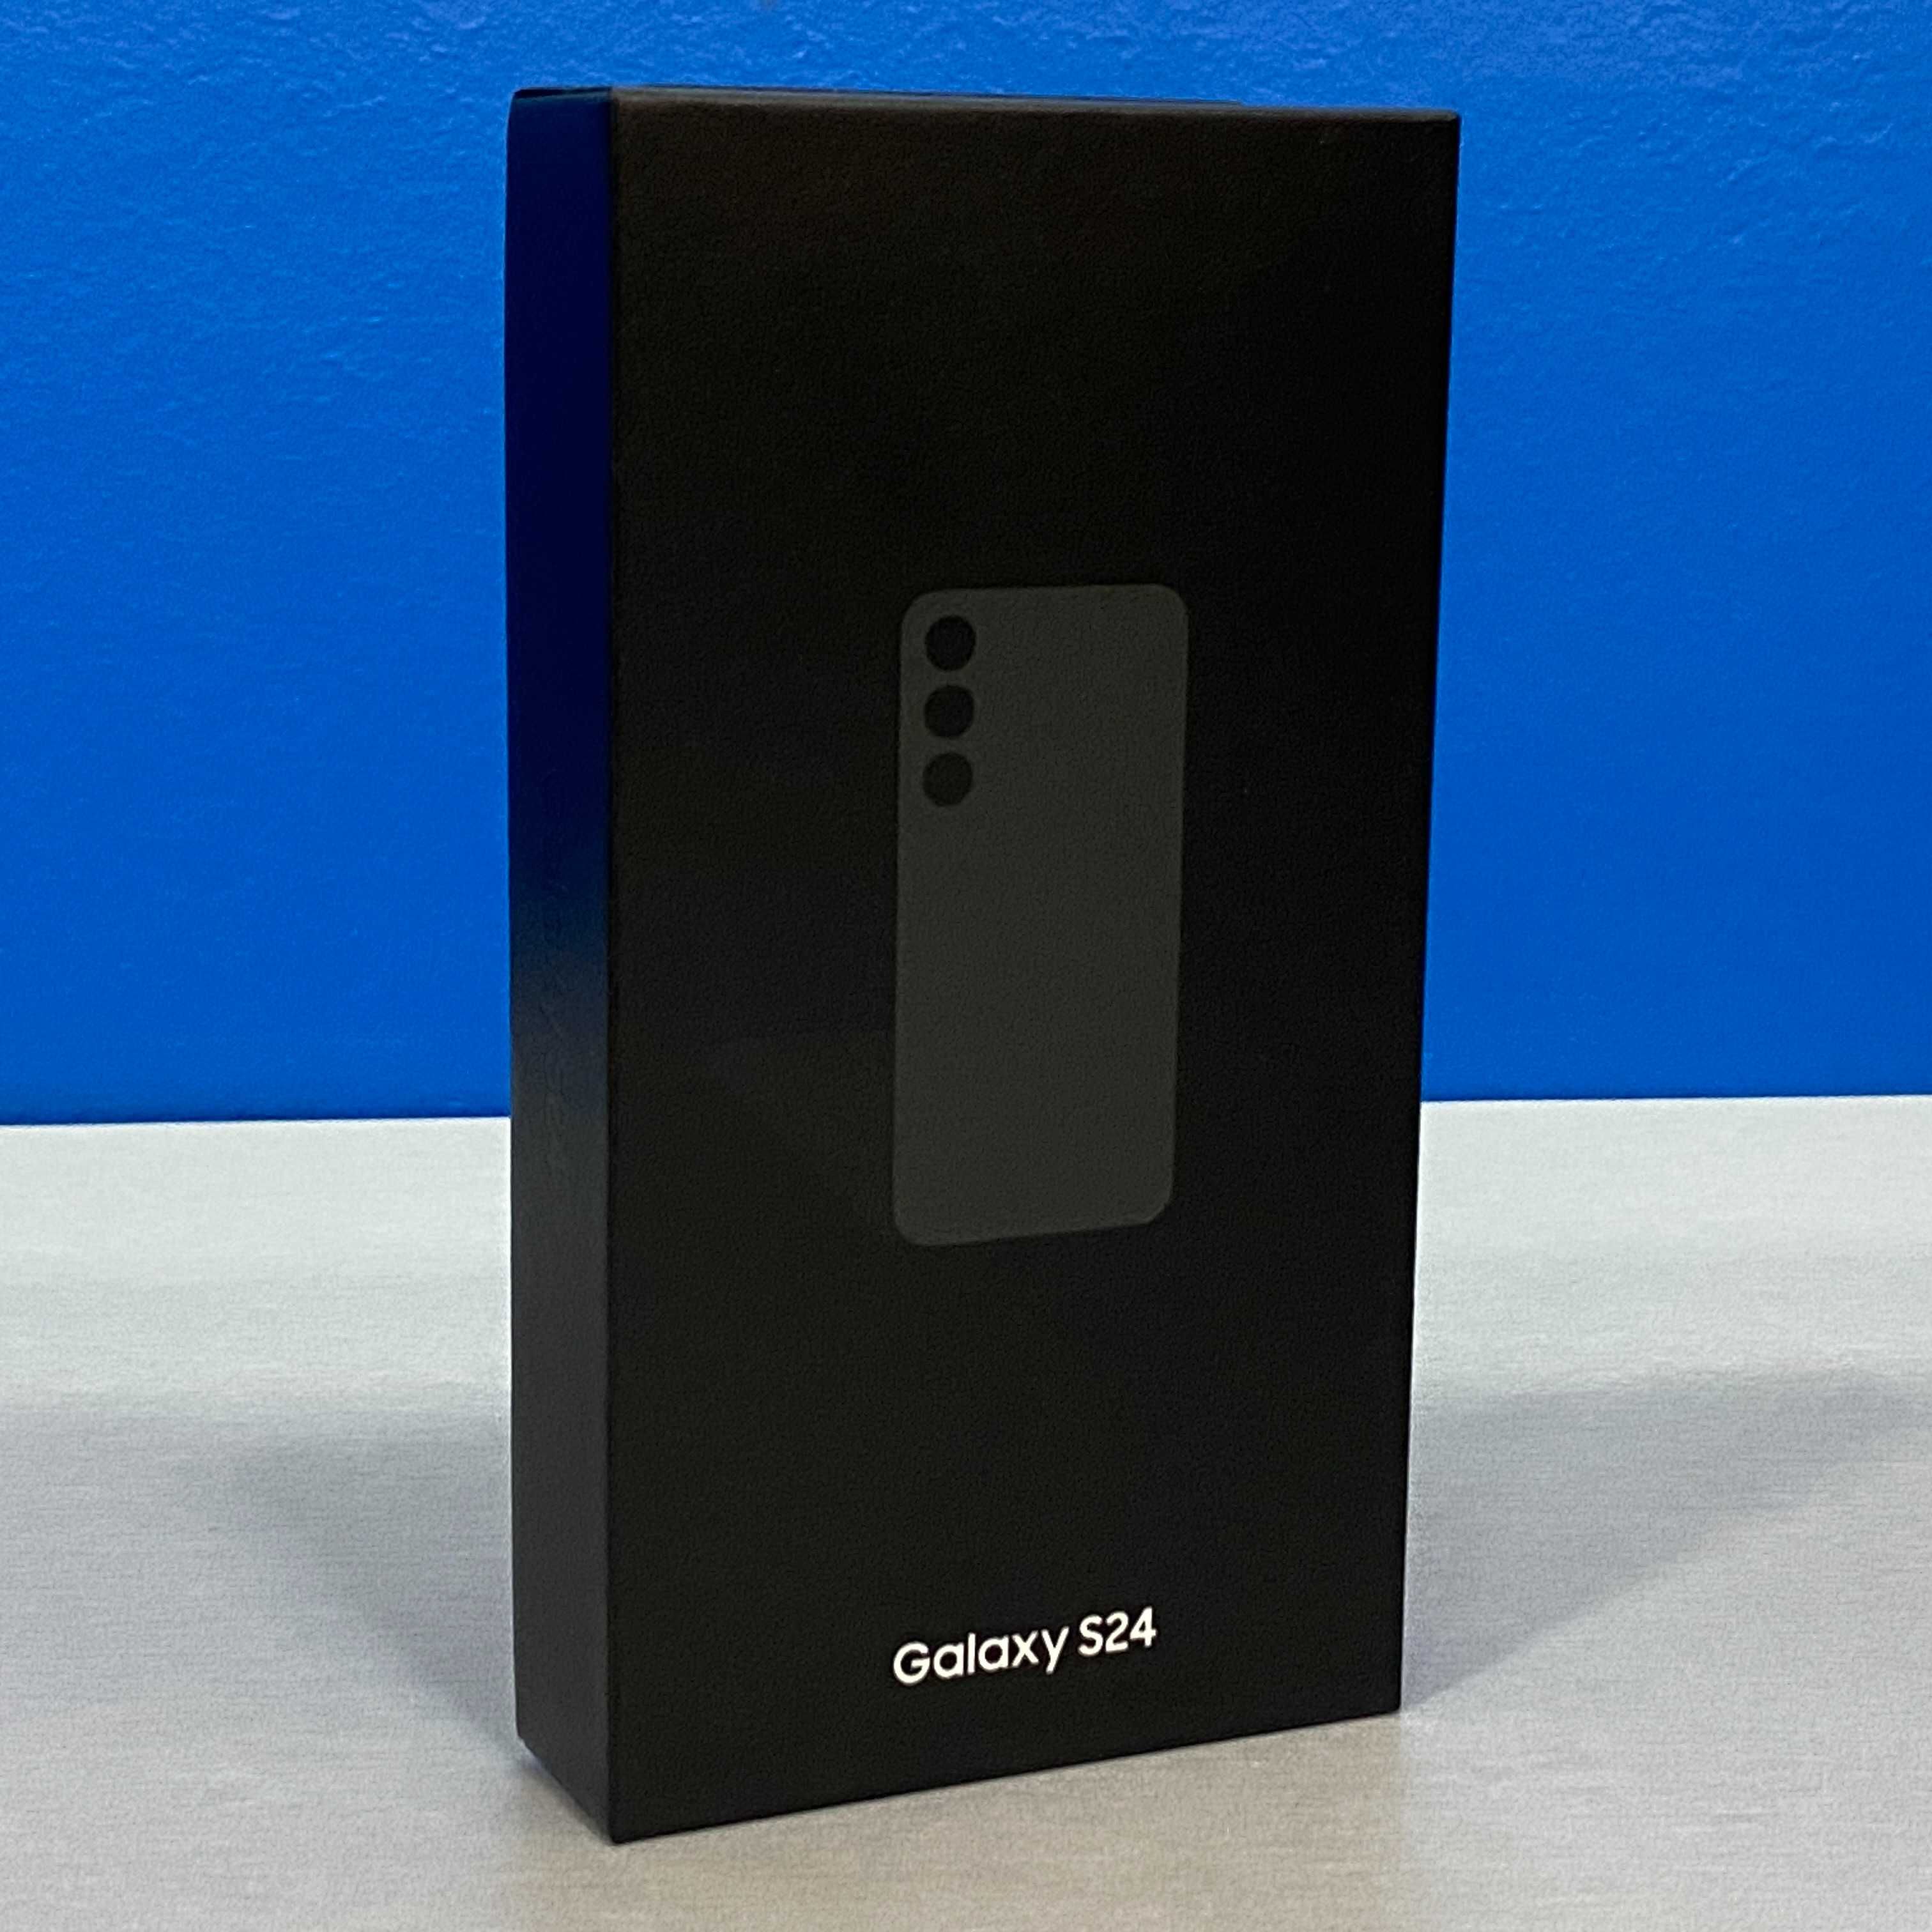 Samsung Galaxy S24 (8GB/256GB) - Black - SELADO - 3 ANOS DE GARANTIA